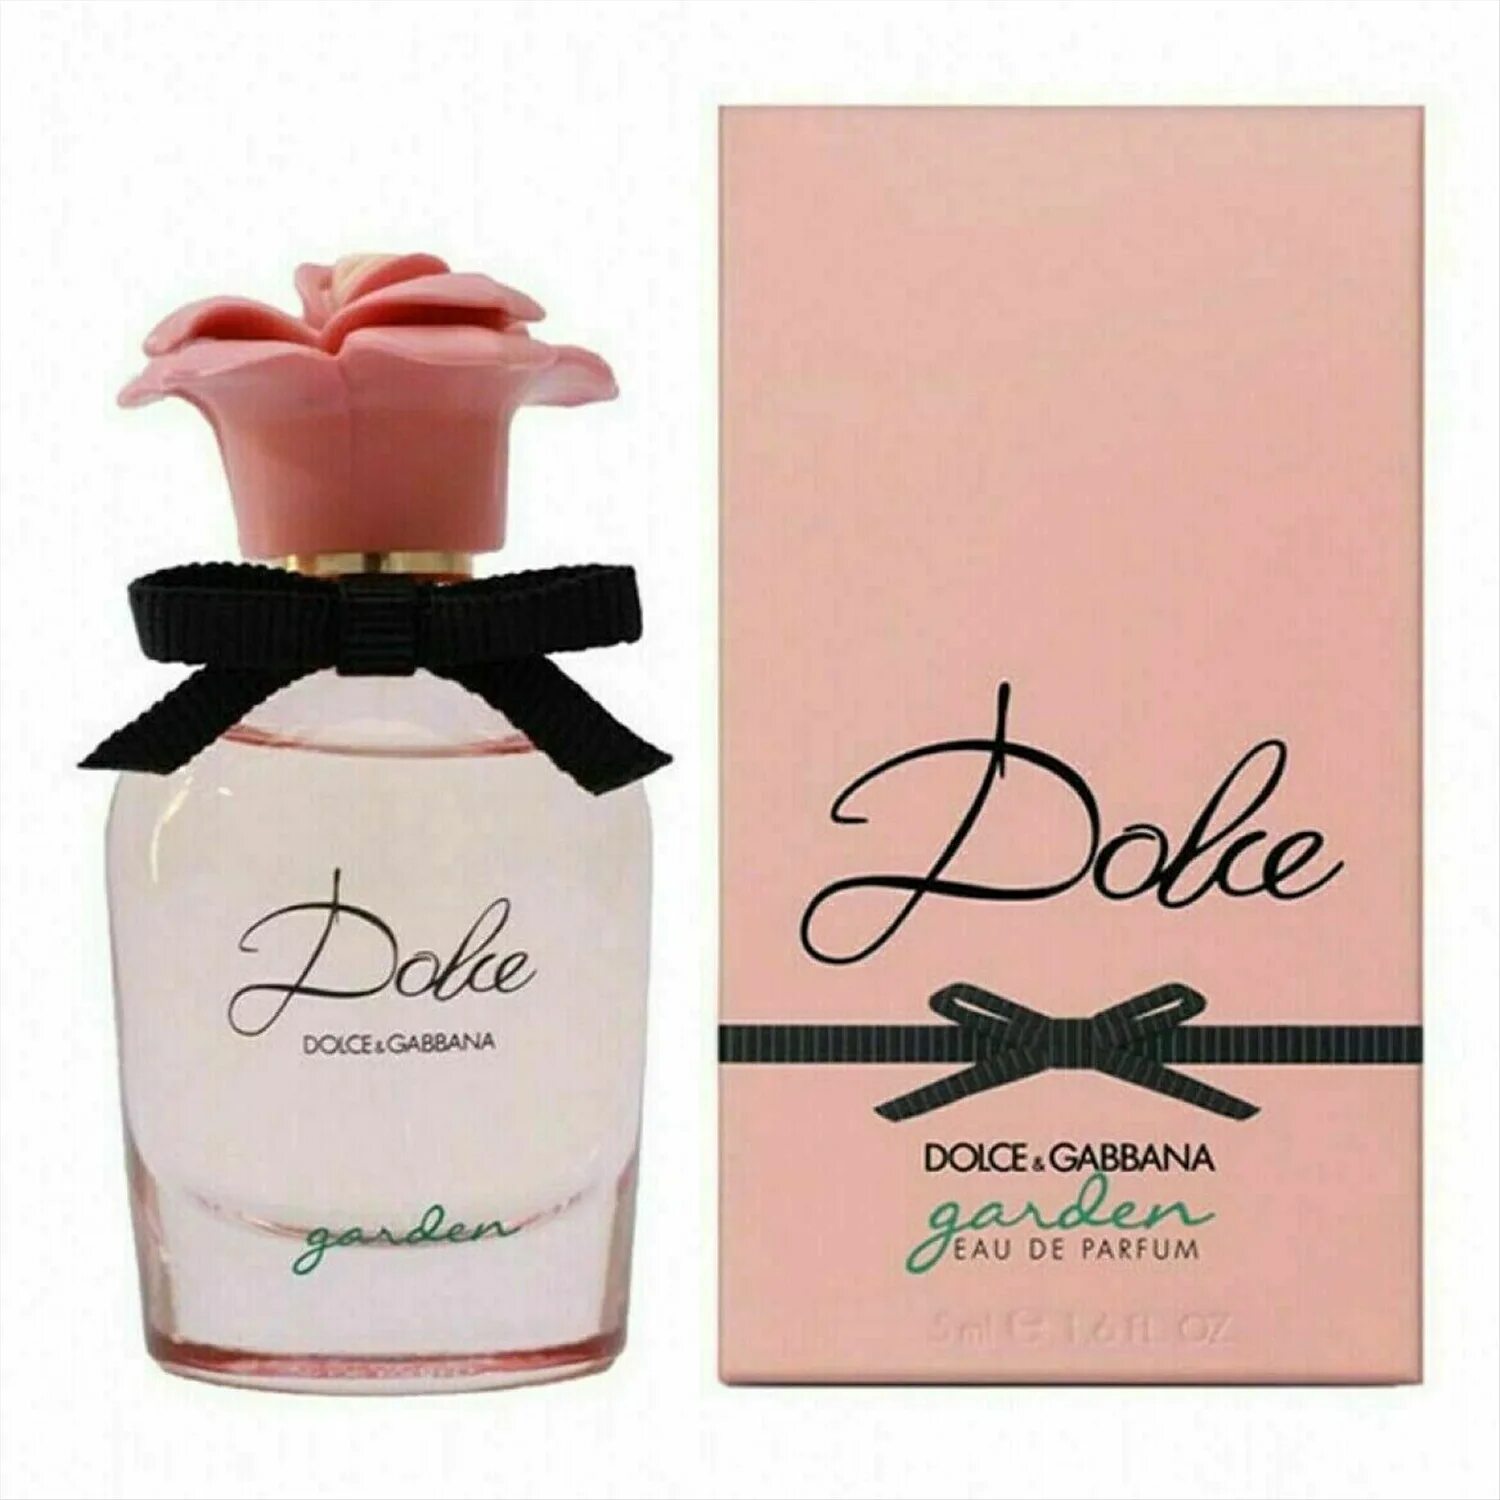 D&G Dolce Garden EDP 75ml. Dolce&Gabbana Dolce Garden 75. Dolce Gabbana Dolce Garden. Dolce Gabbana Dolce Lady 30ml EDP. Dolce gabbana dolce 30 мл